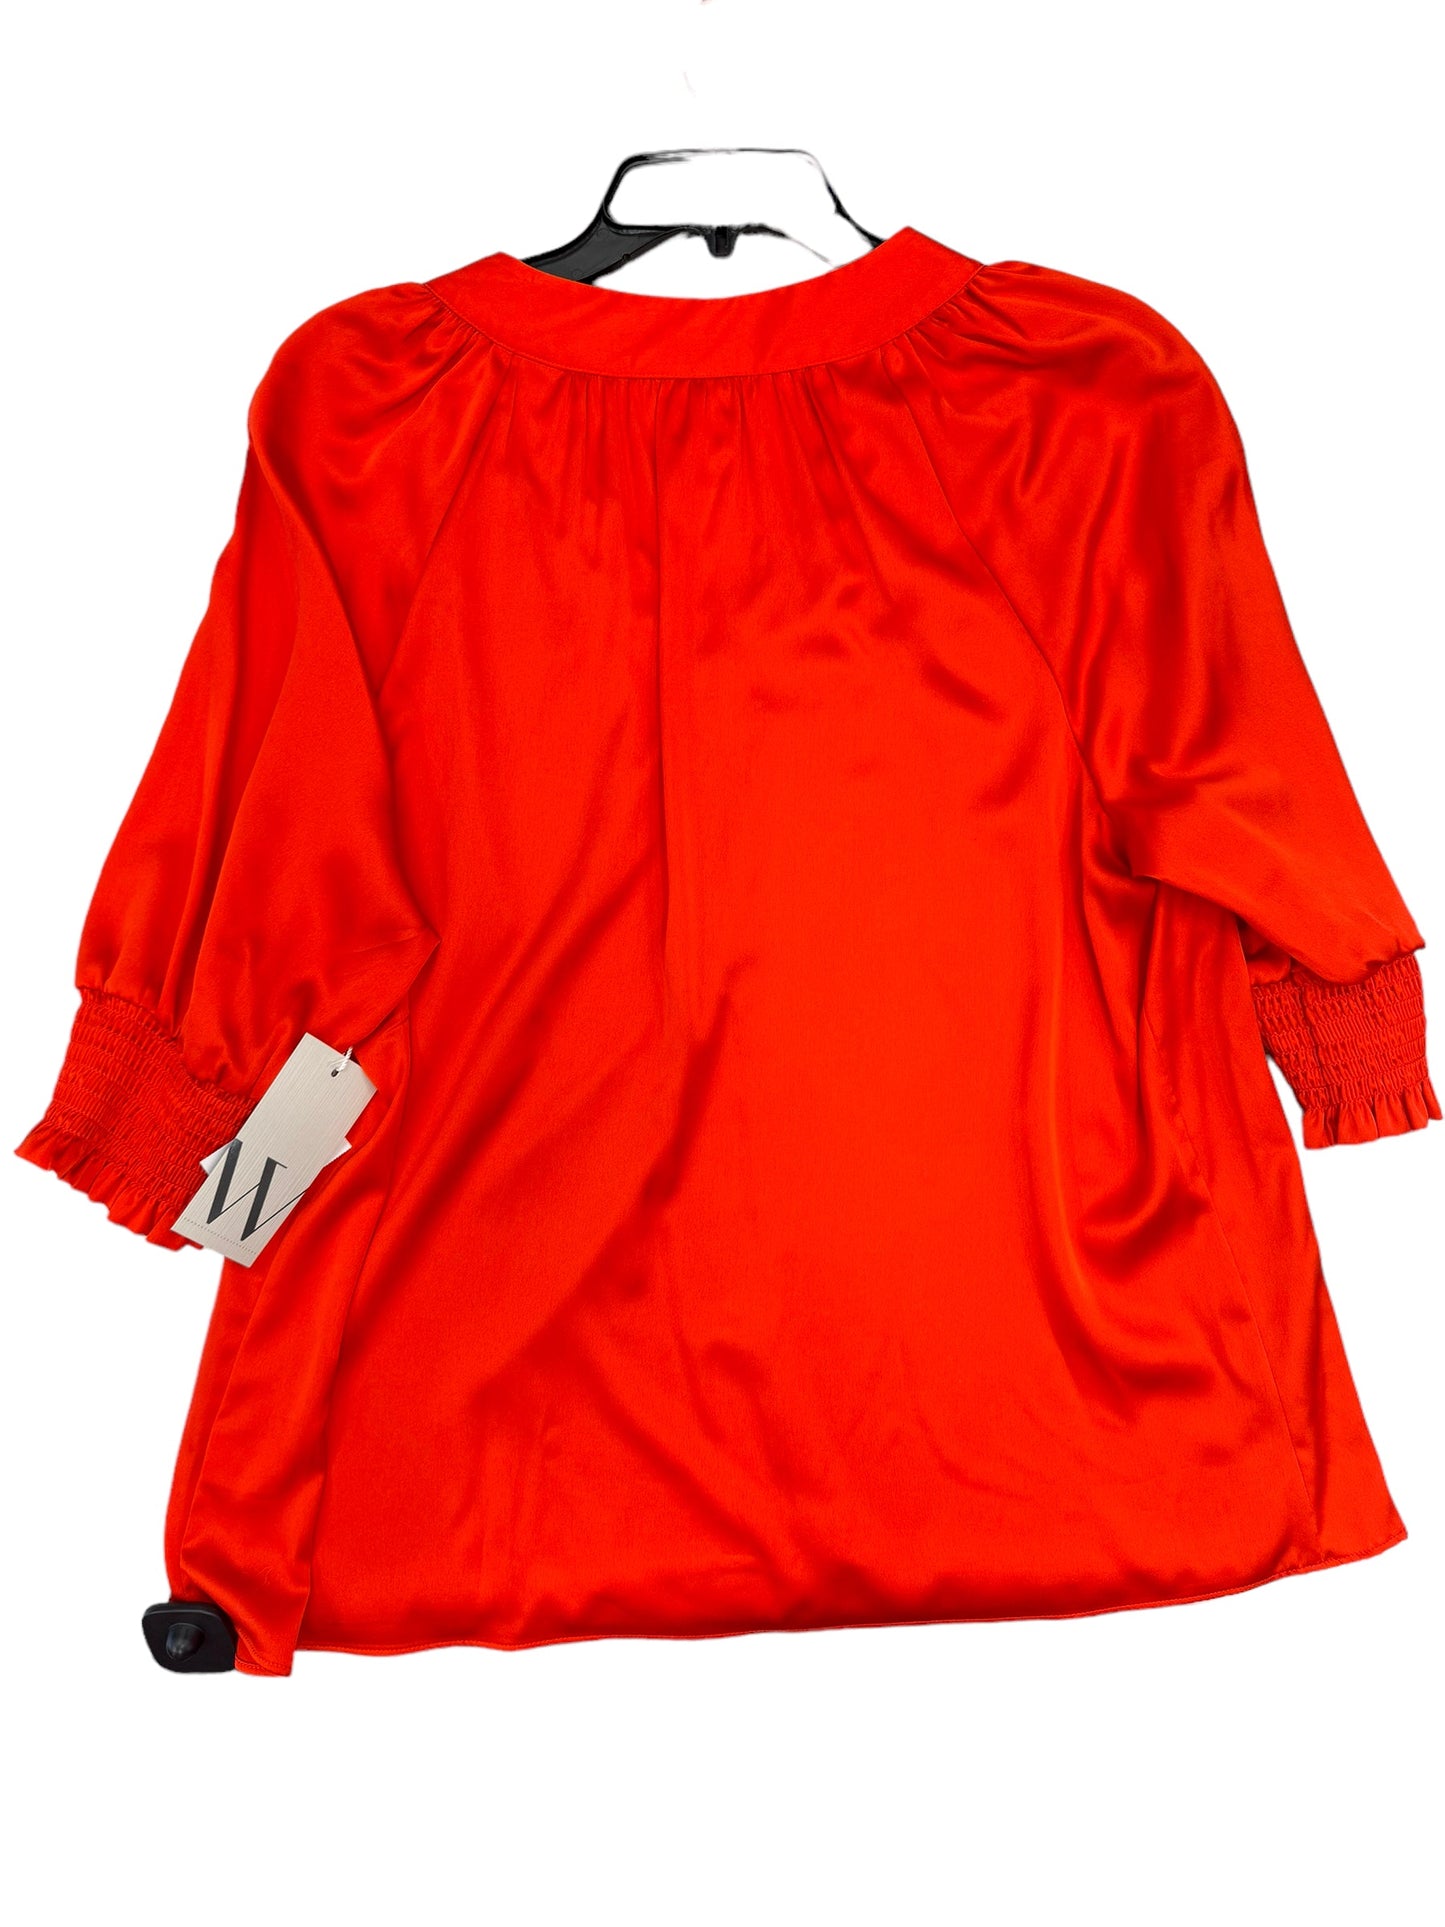 Blouse Short Sleeve By Worthington  Size: L